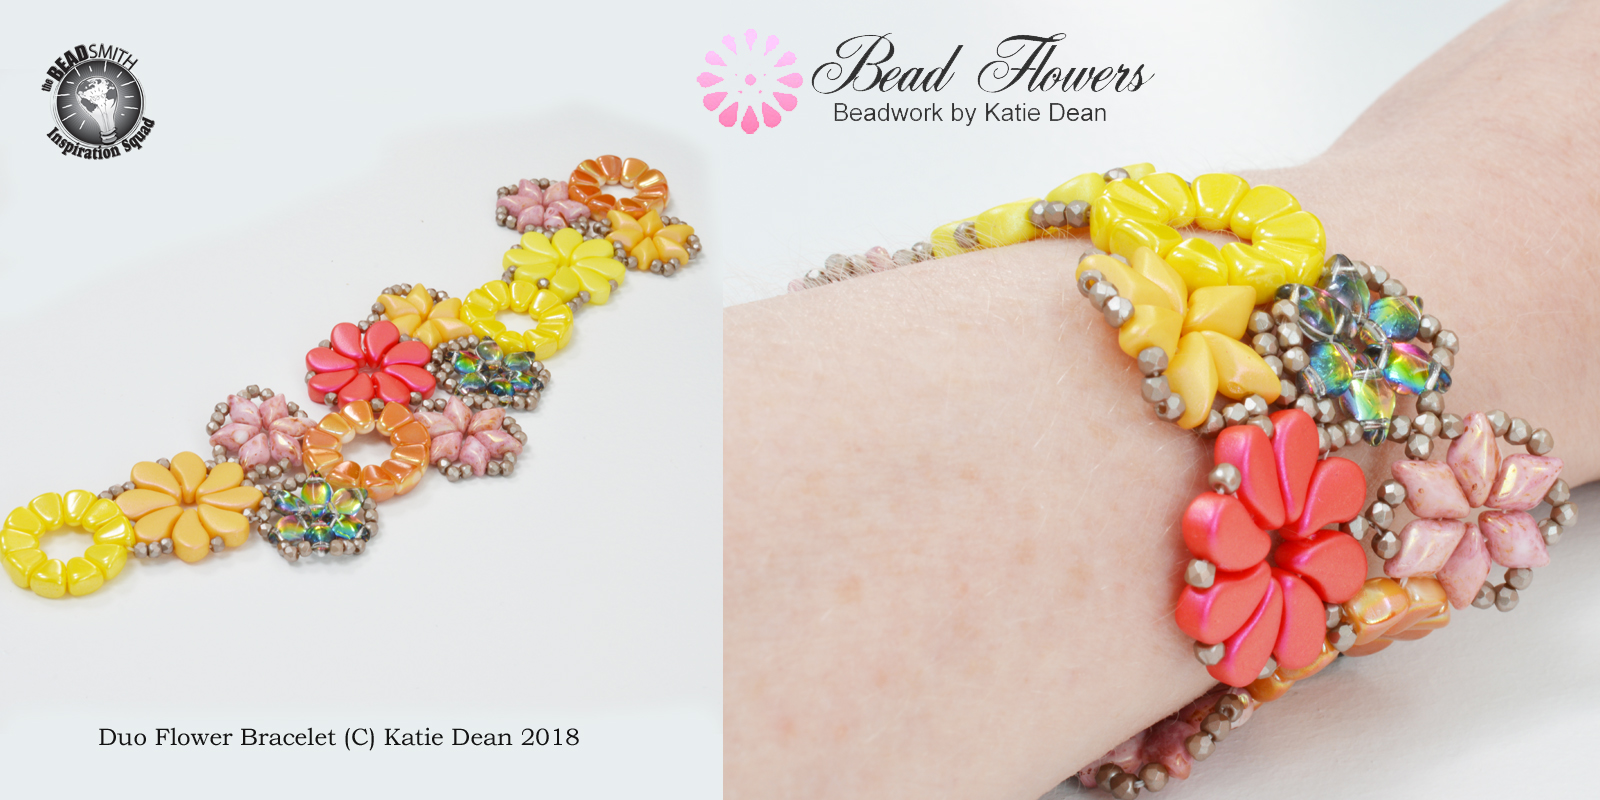 Freeform beading projects, Duo flower bracelet, Katie Dean, Beadflowers